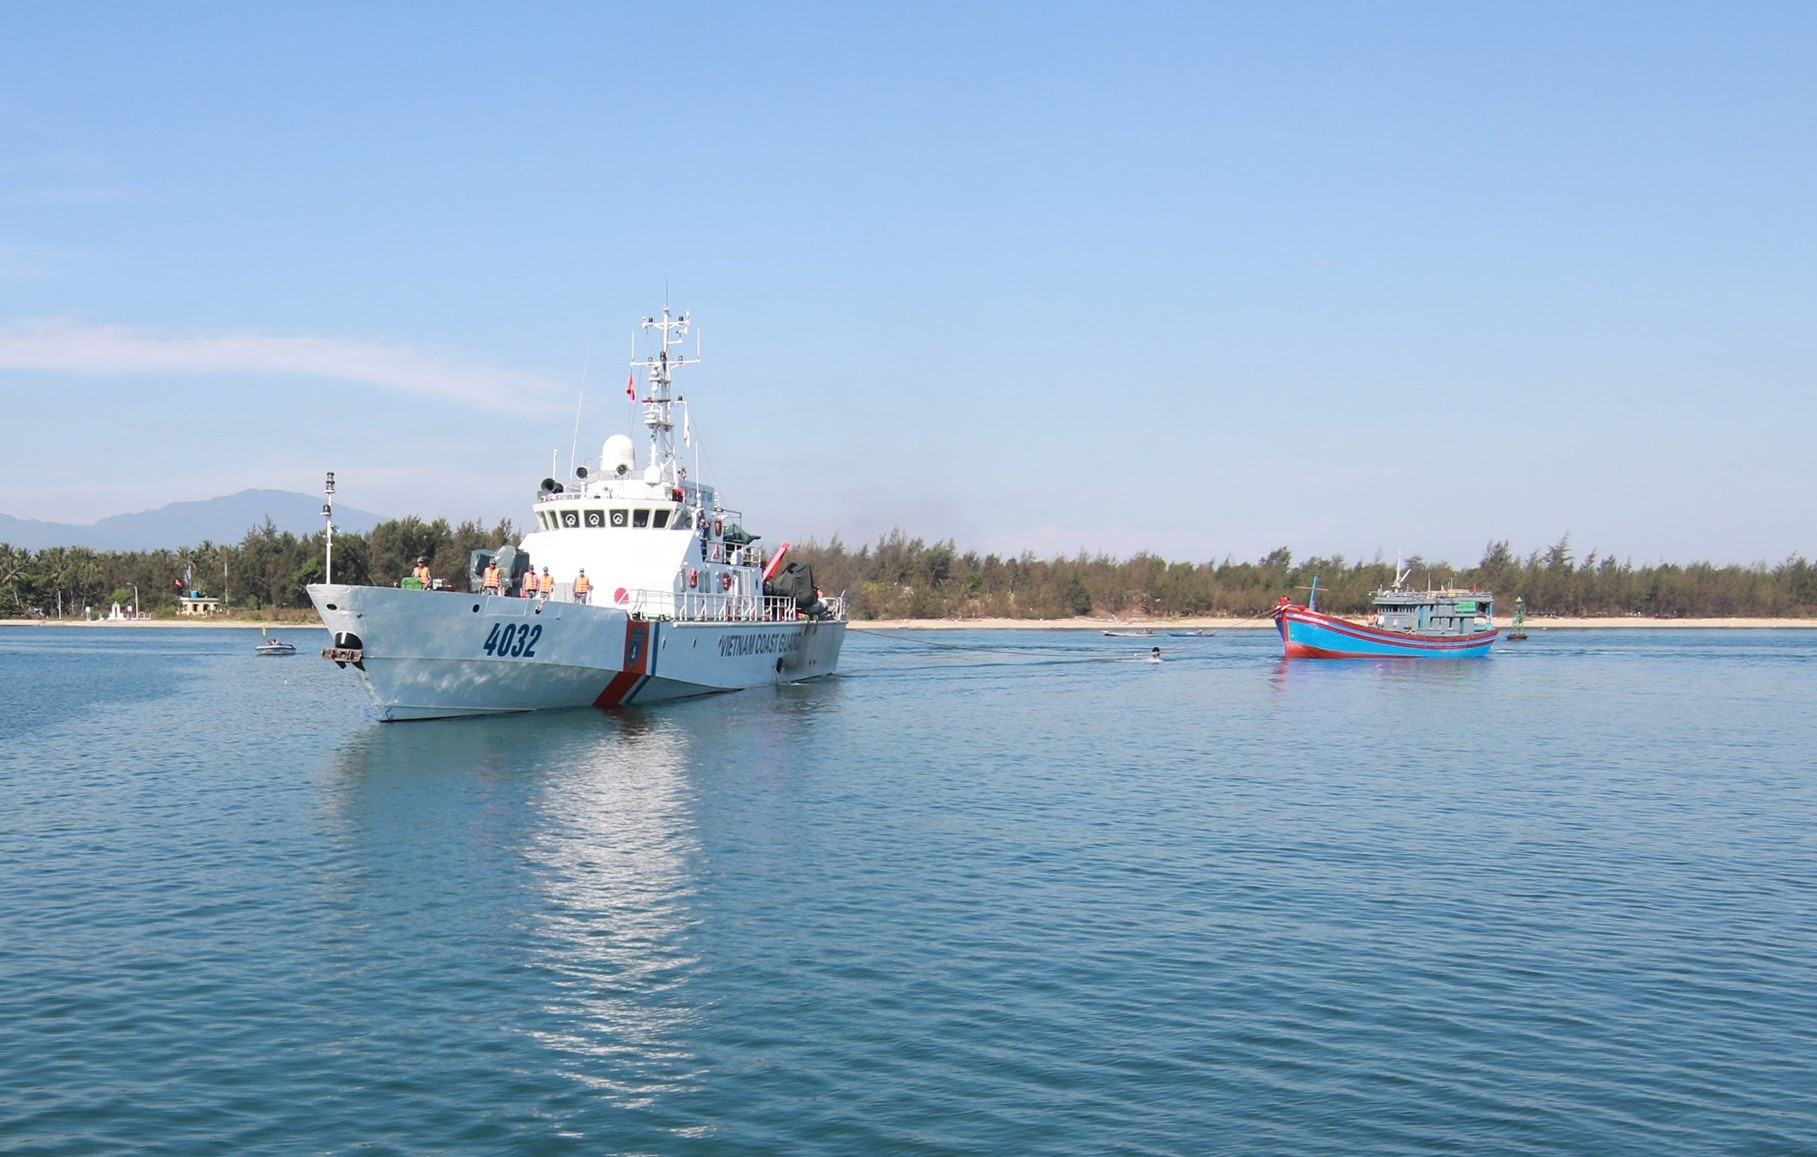 Tàu cảnh sát biển 4032 thực hiện nhiệm vụ cứu hộ an toàn tàu cá ngư dân Quảng Ngãi gặp nạn khi đang đánh bắt trên biển. Ảnh: T.C